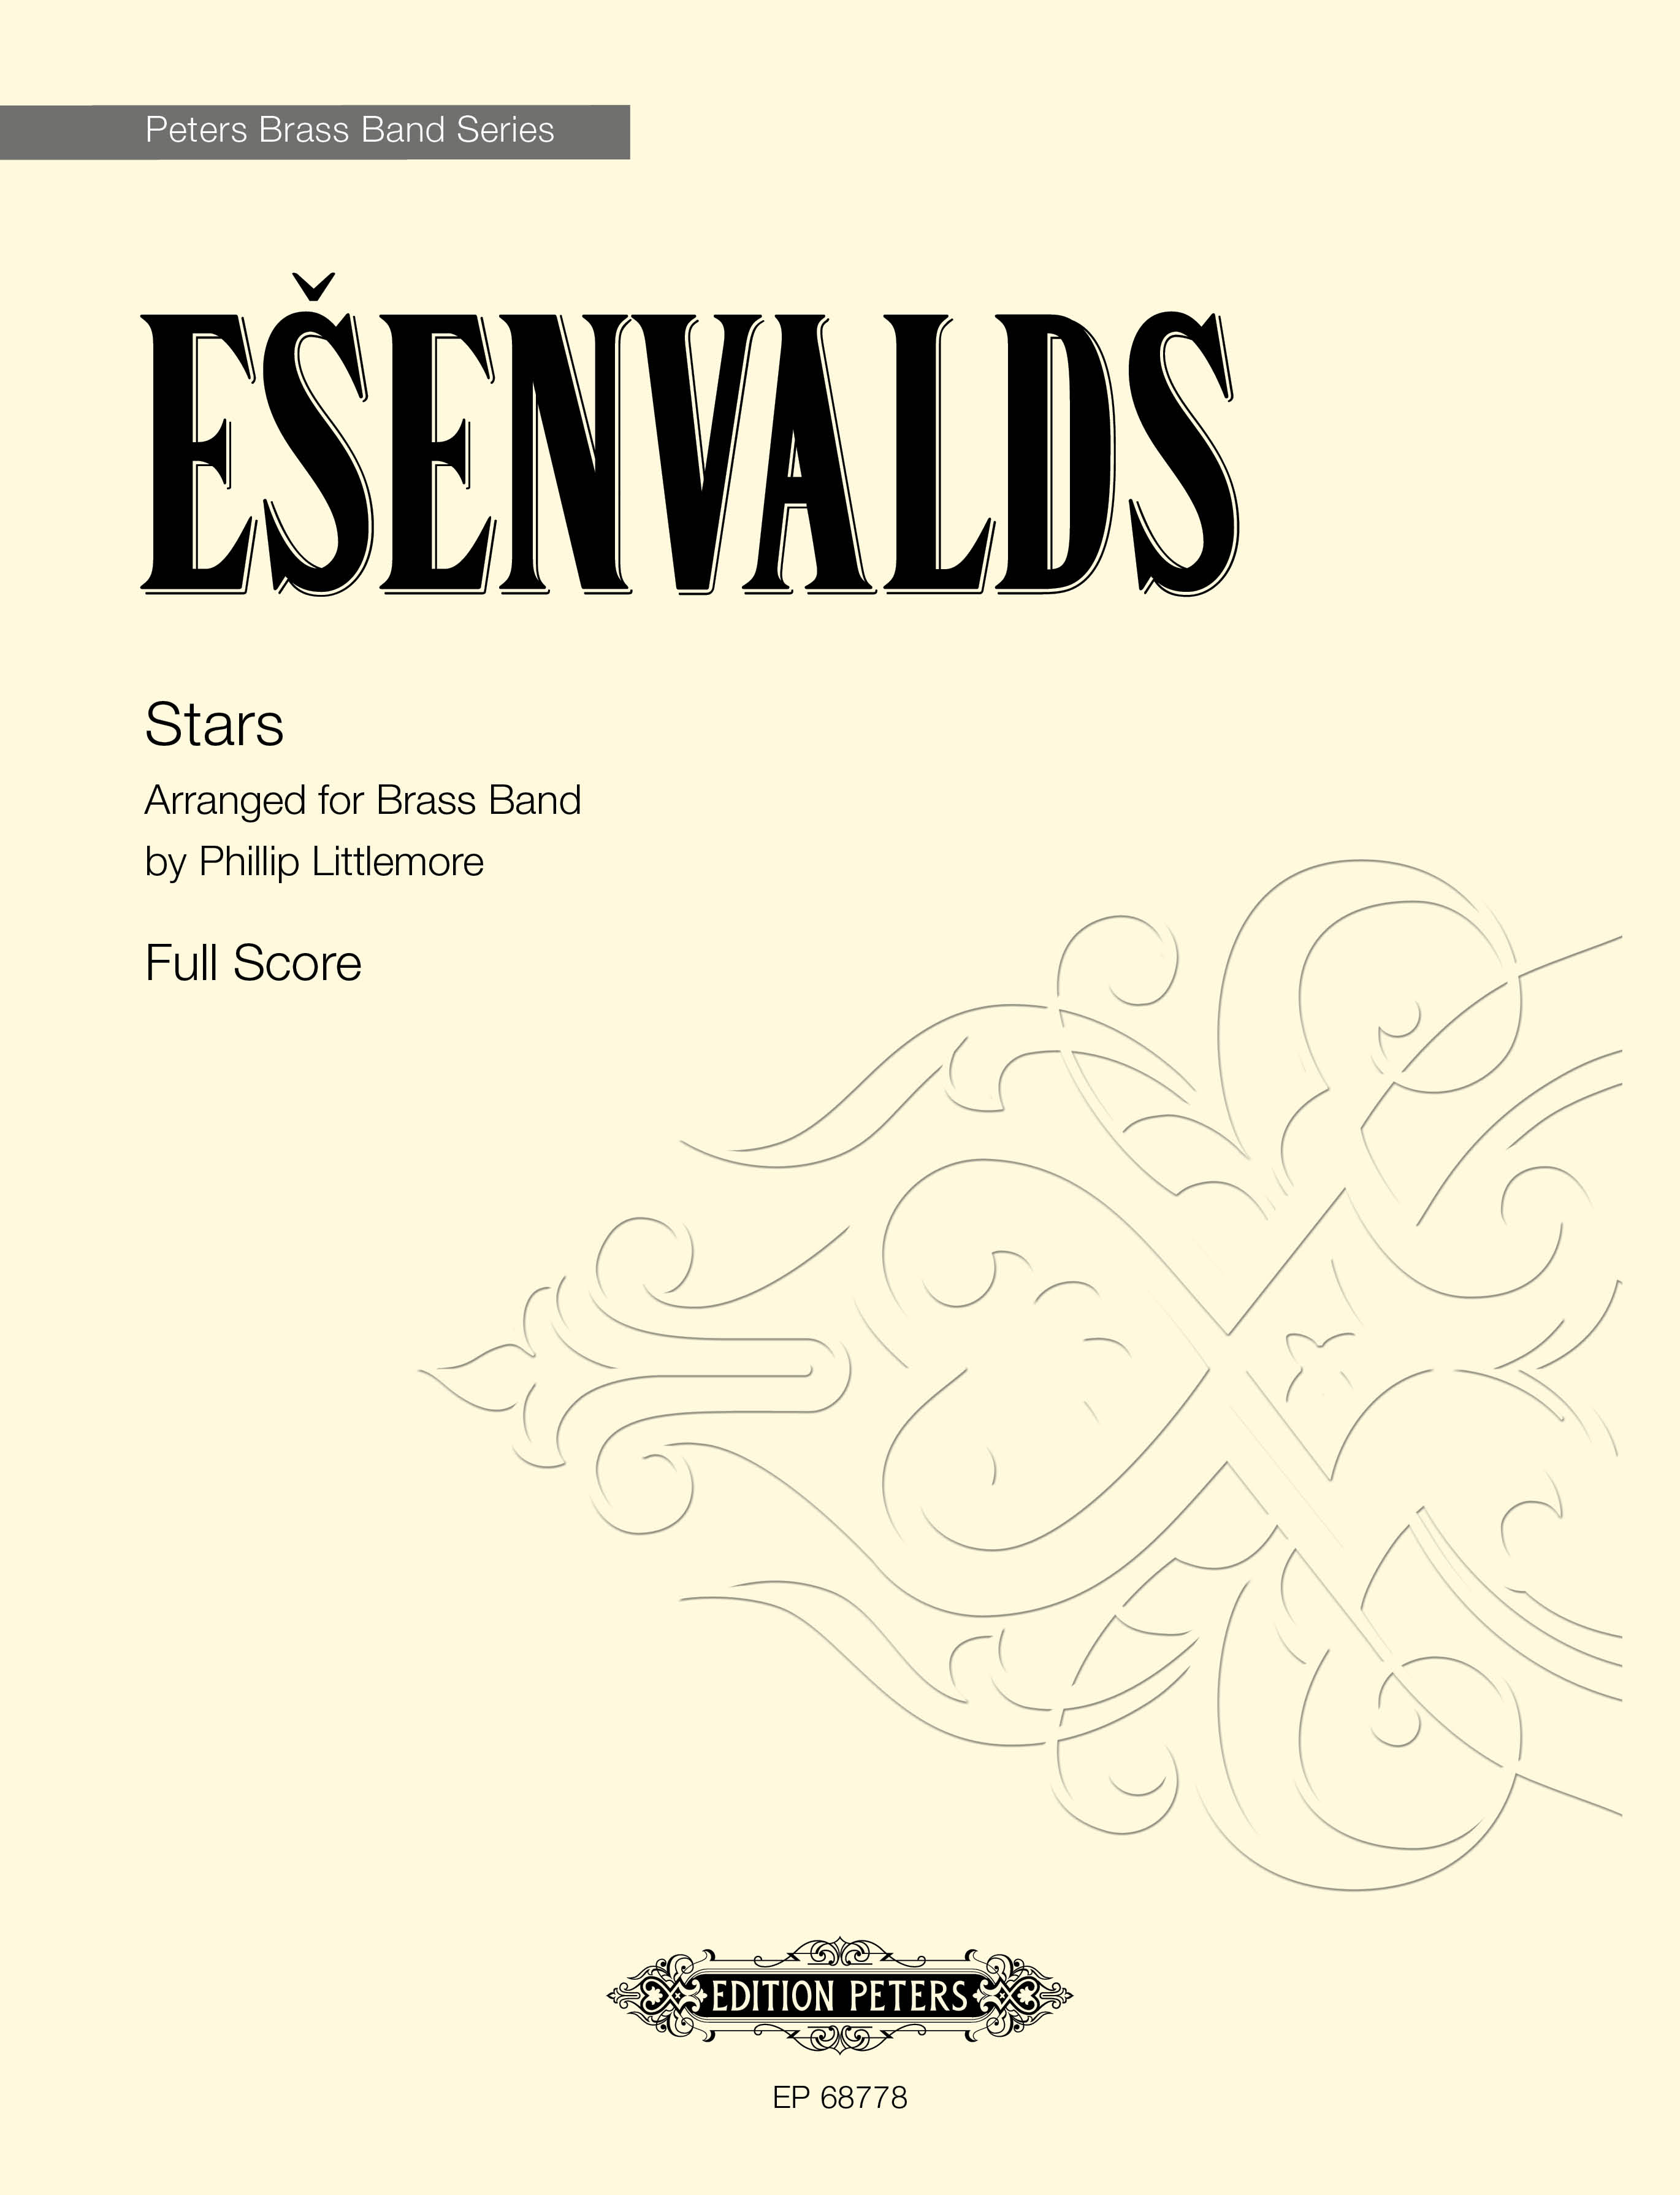 Esenvalds Stars Littlemore Brass Band Full Score Sheet Music Songbook